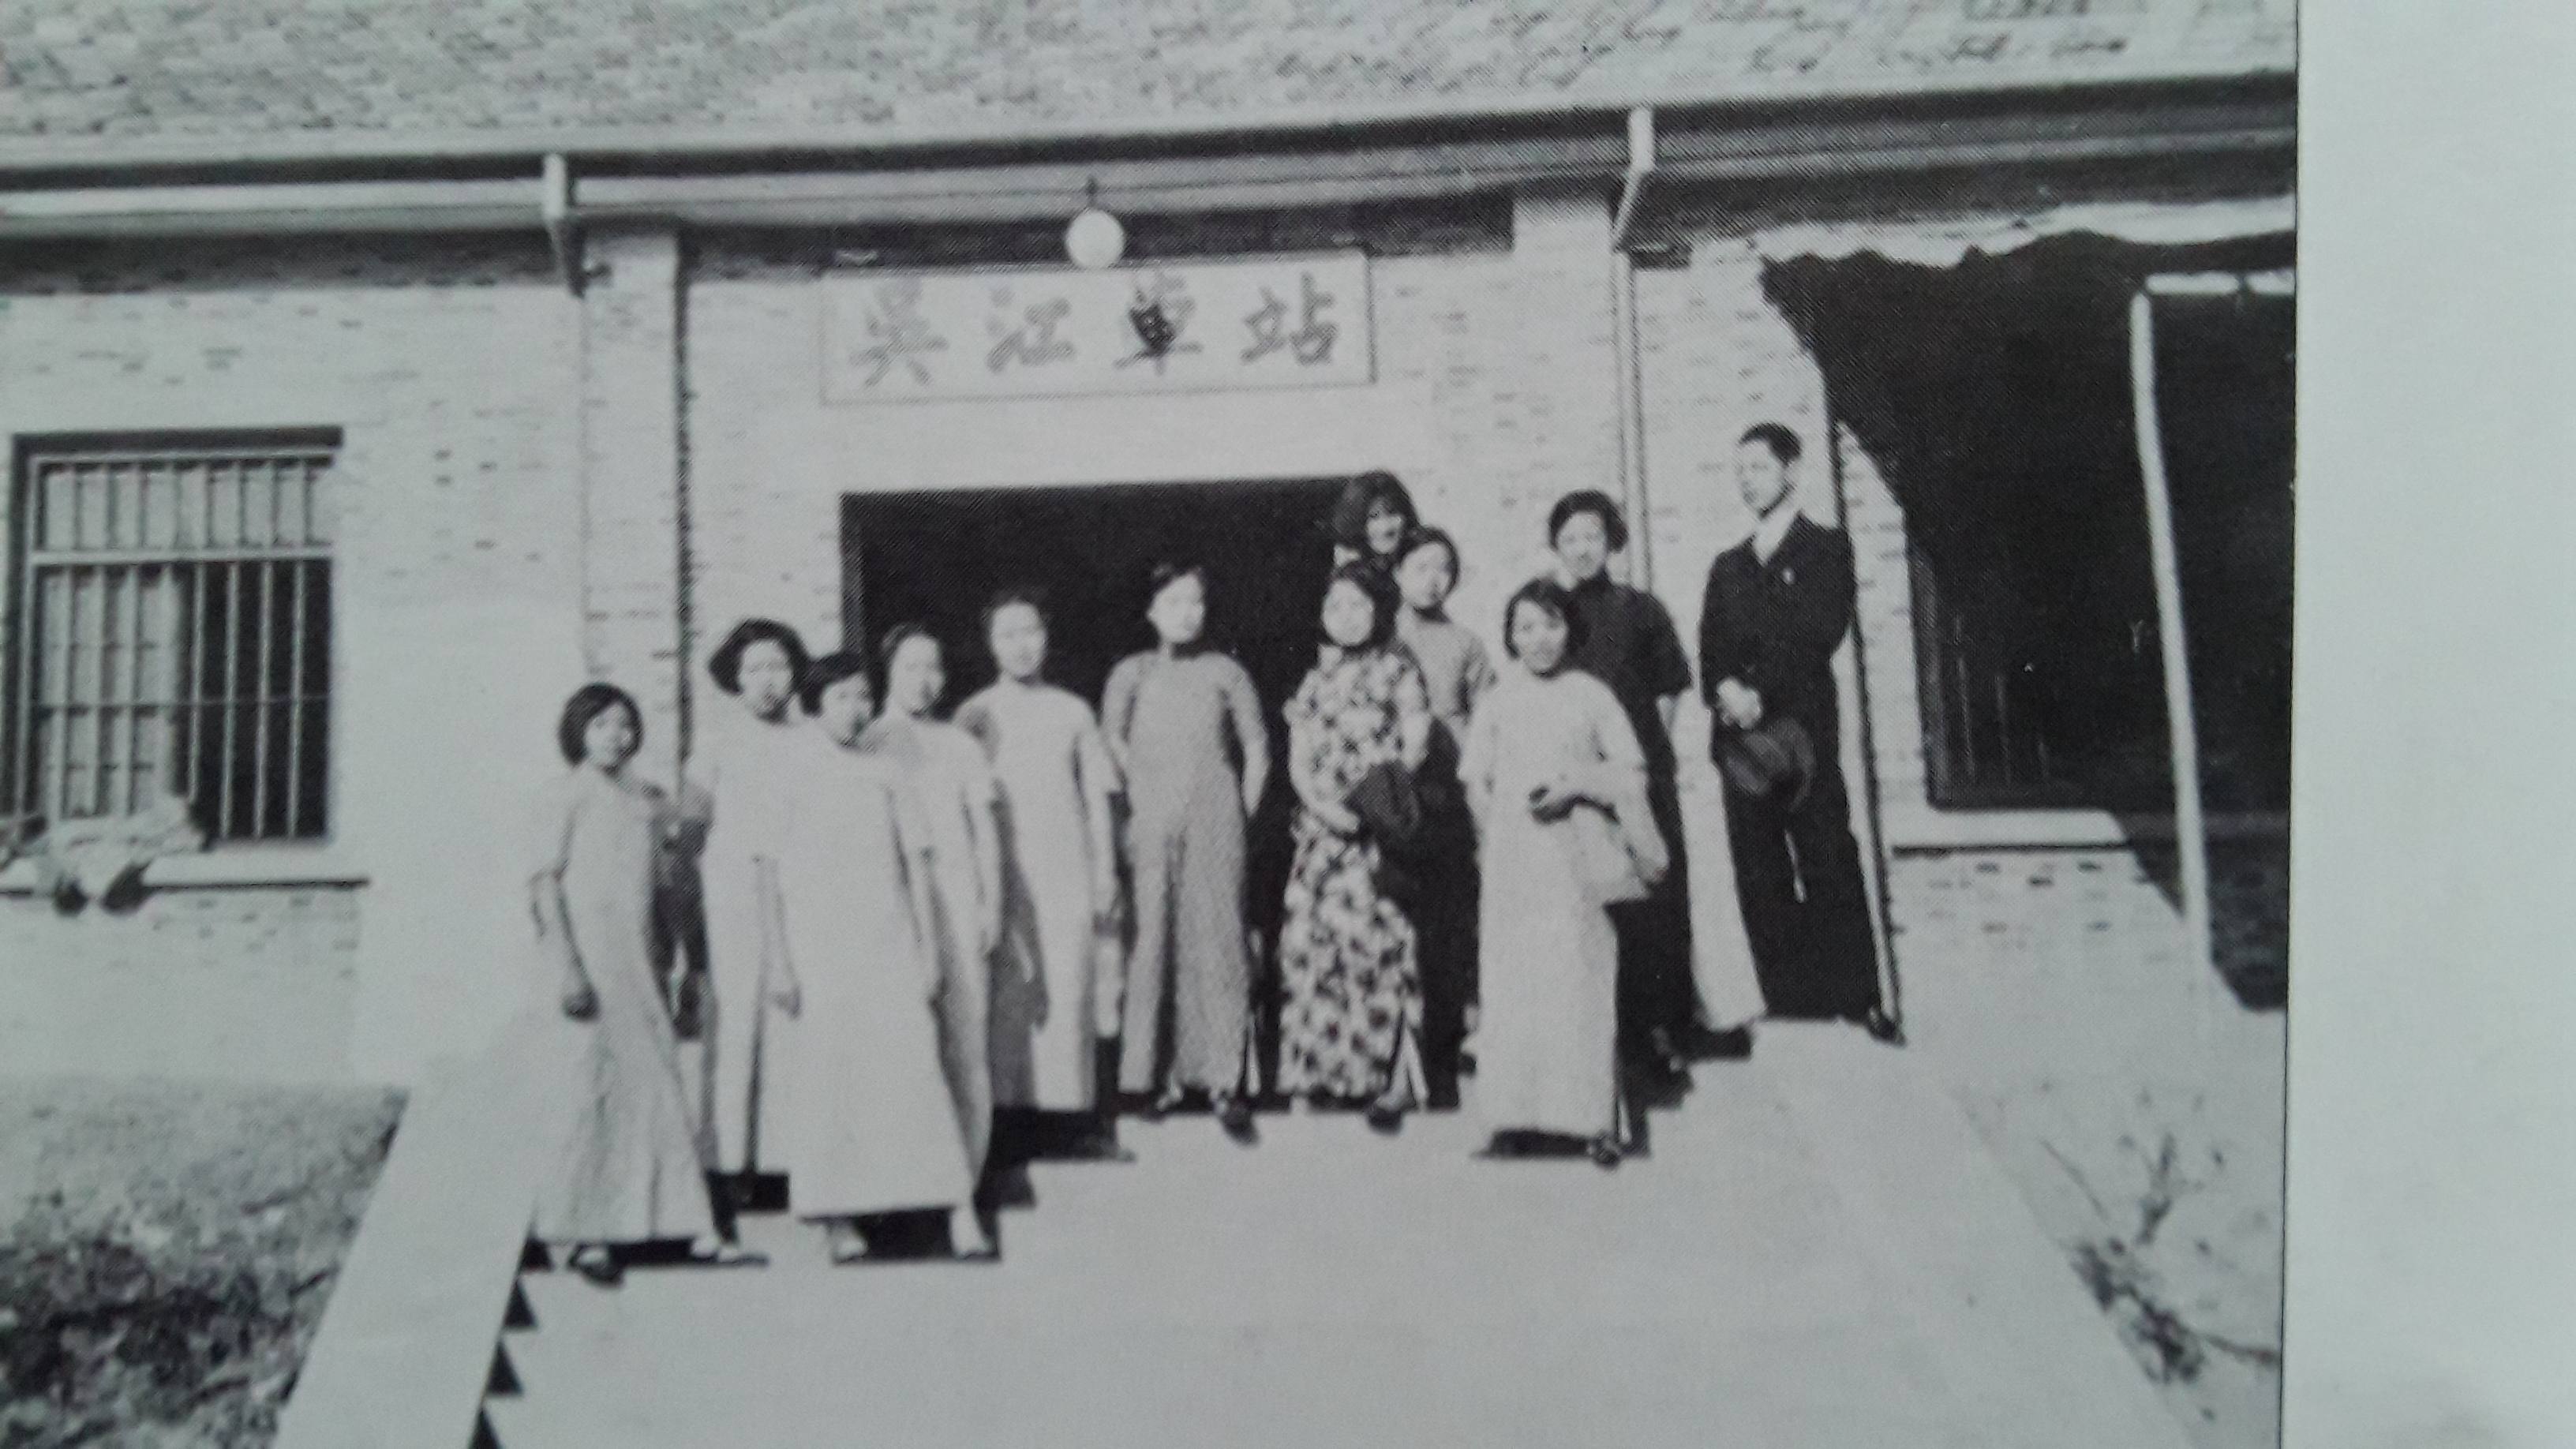 7.苏嘉铁路吴江火车站 摄于上世纪三十年代.jpg